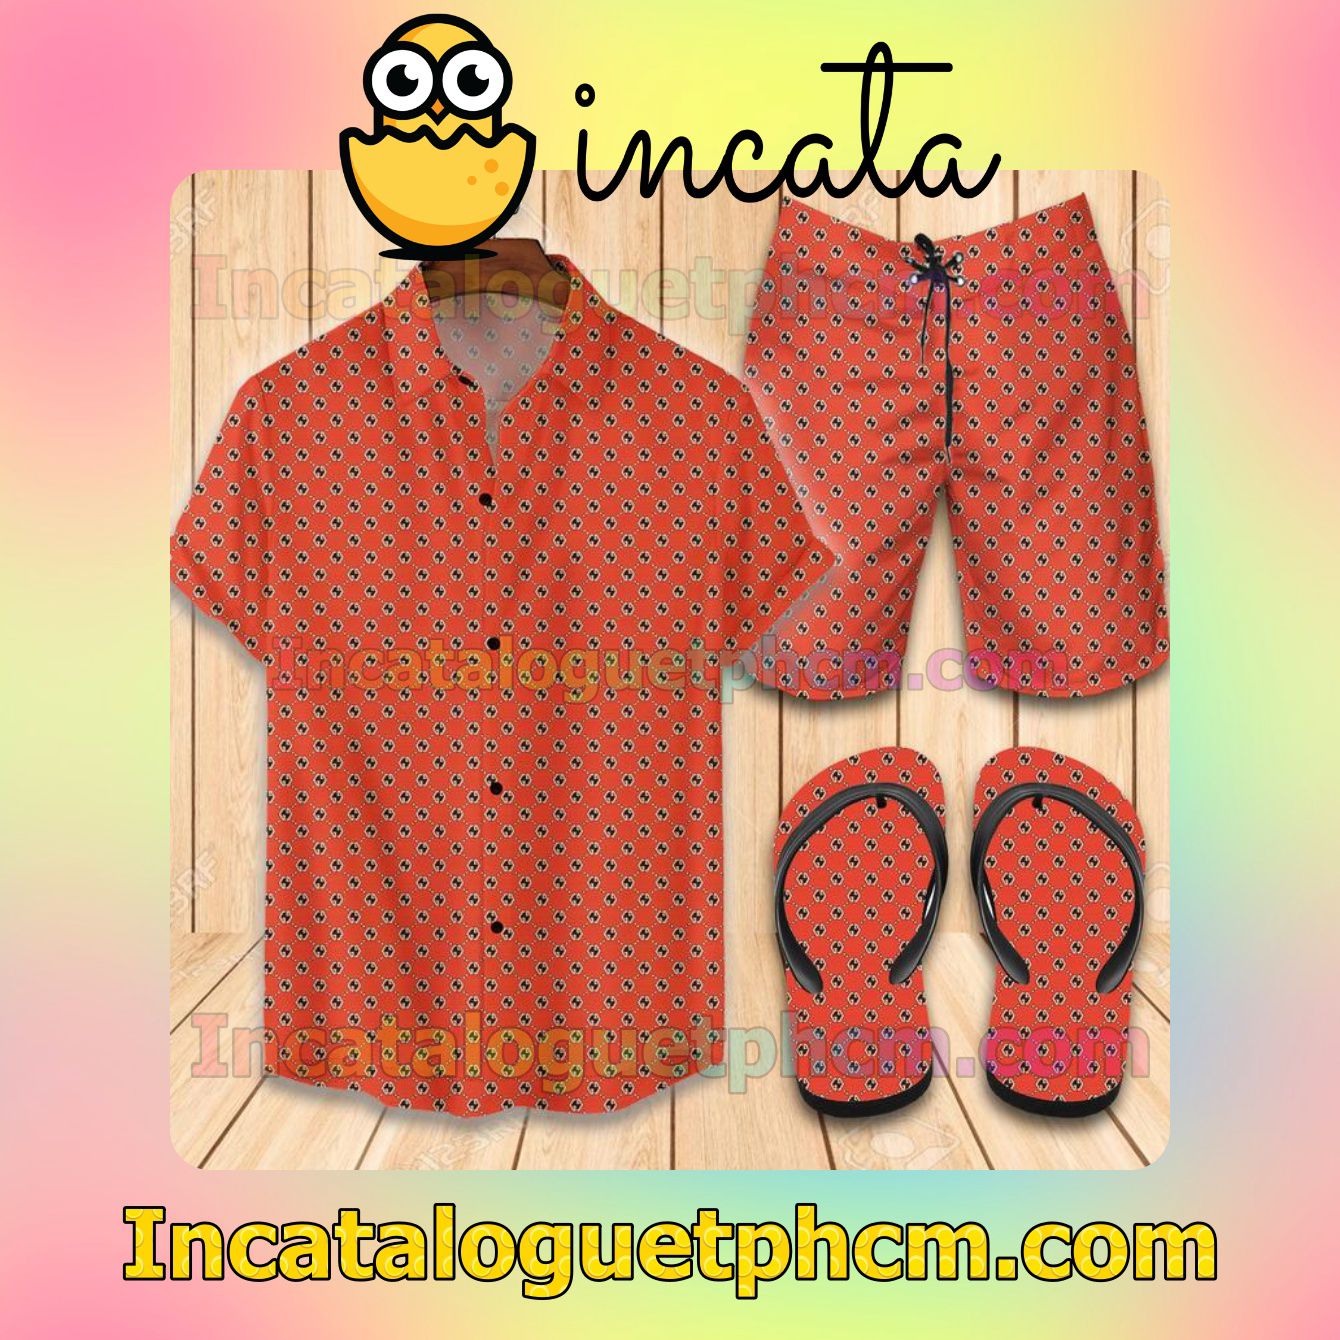 Gucci Red Aloha Shirt And Shorts